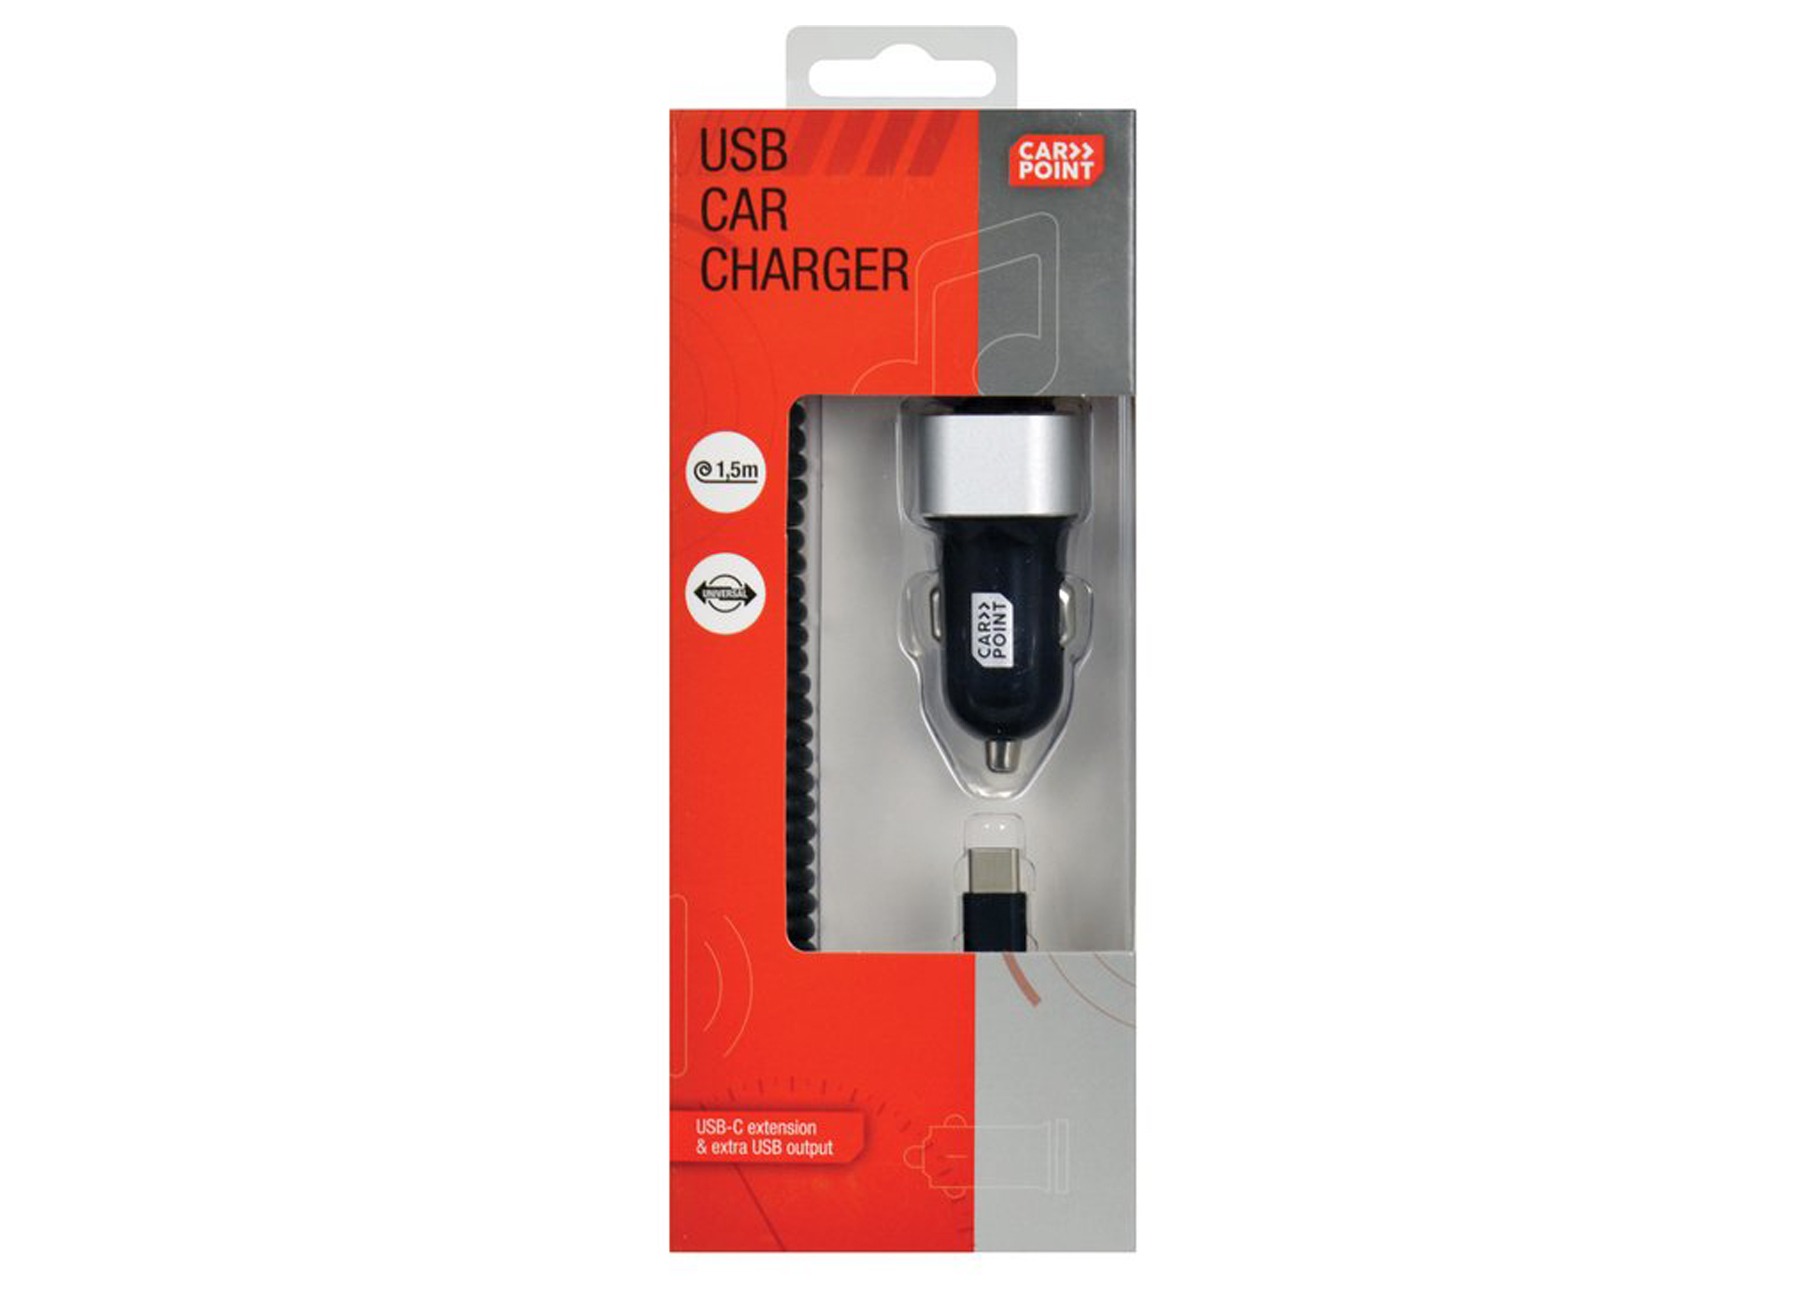 USB CAR CHARGER 12/24V USB 3.0